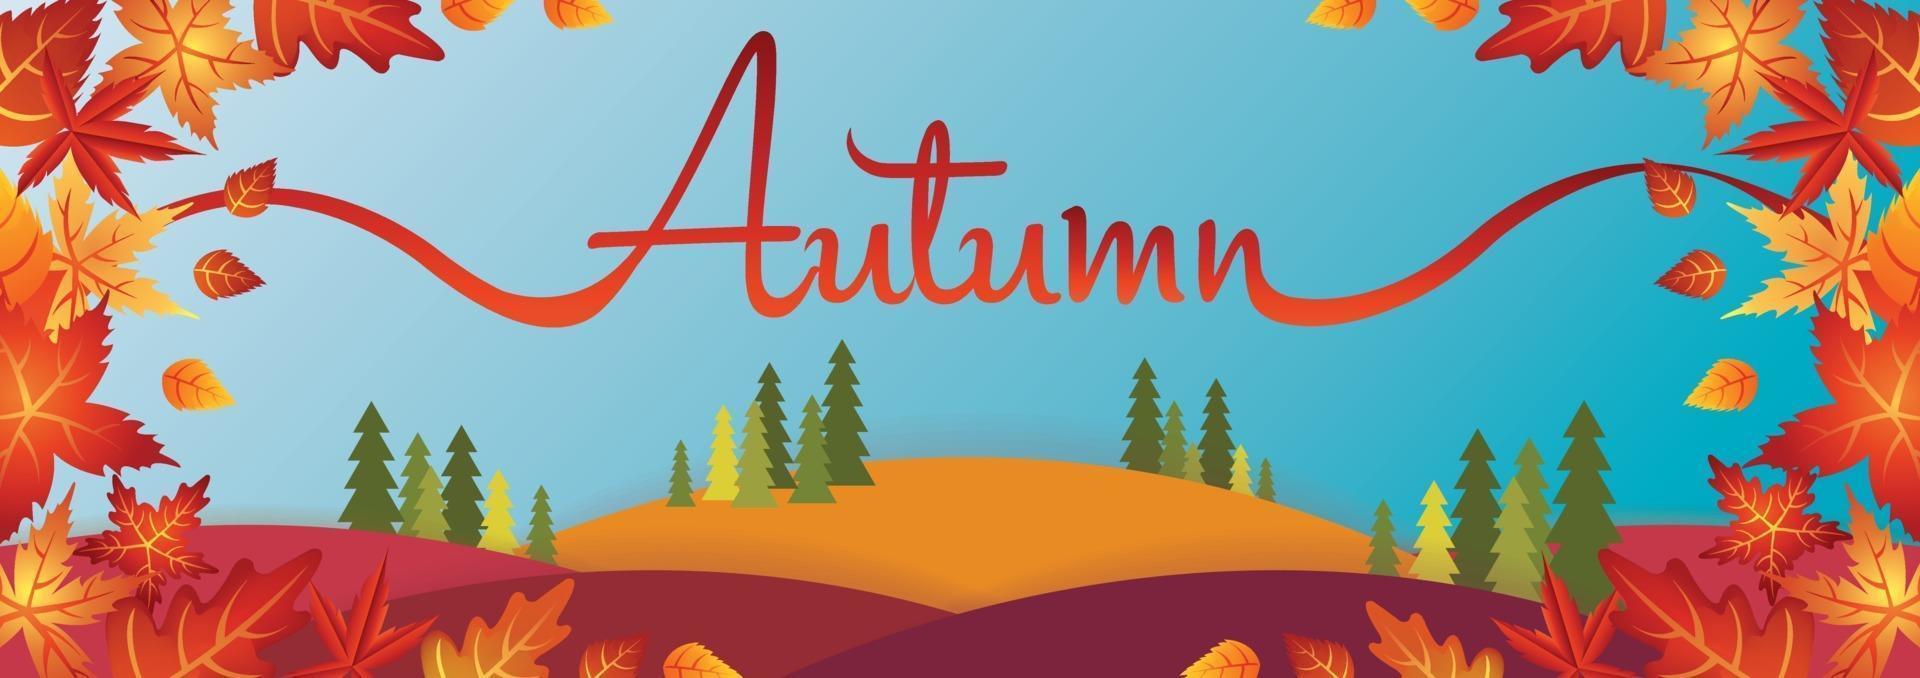 landscape autumn season art vector